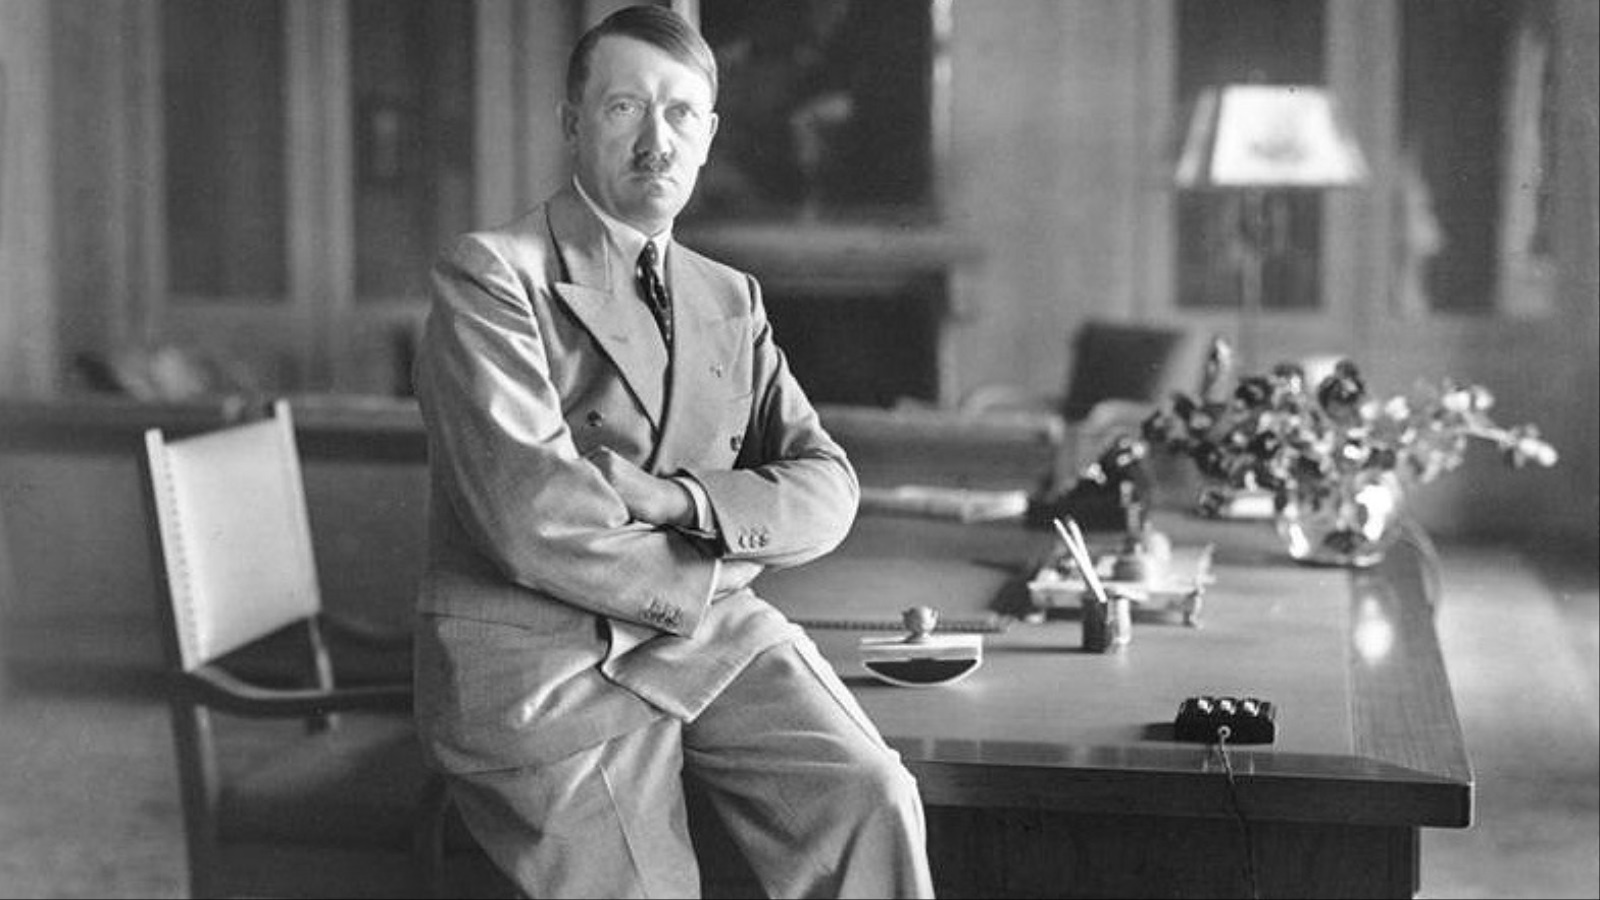 أراد هتلر أن يطبق نظرية قانون البقاء للأصلح. فقام بالإعلان عن كثير من البرامج التي ترمي إلى تعقيم وإخصاء حوالي 400 ألف شاب فقط لأنهم معاقون